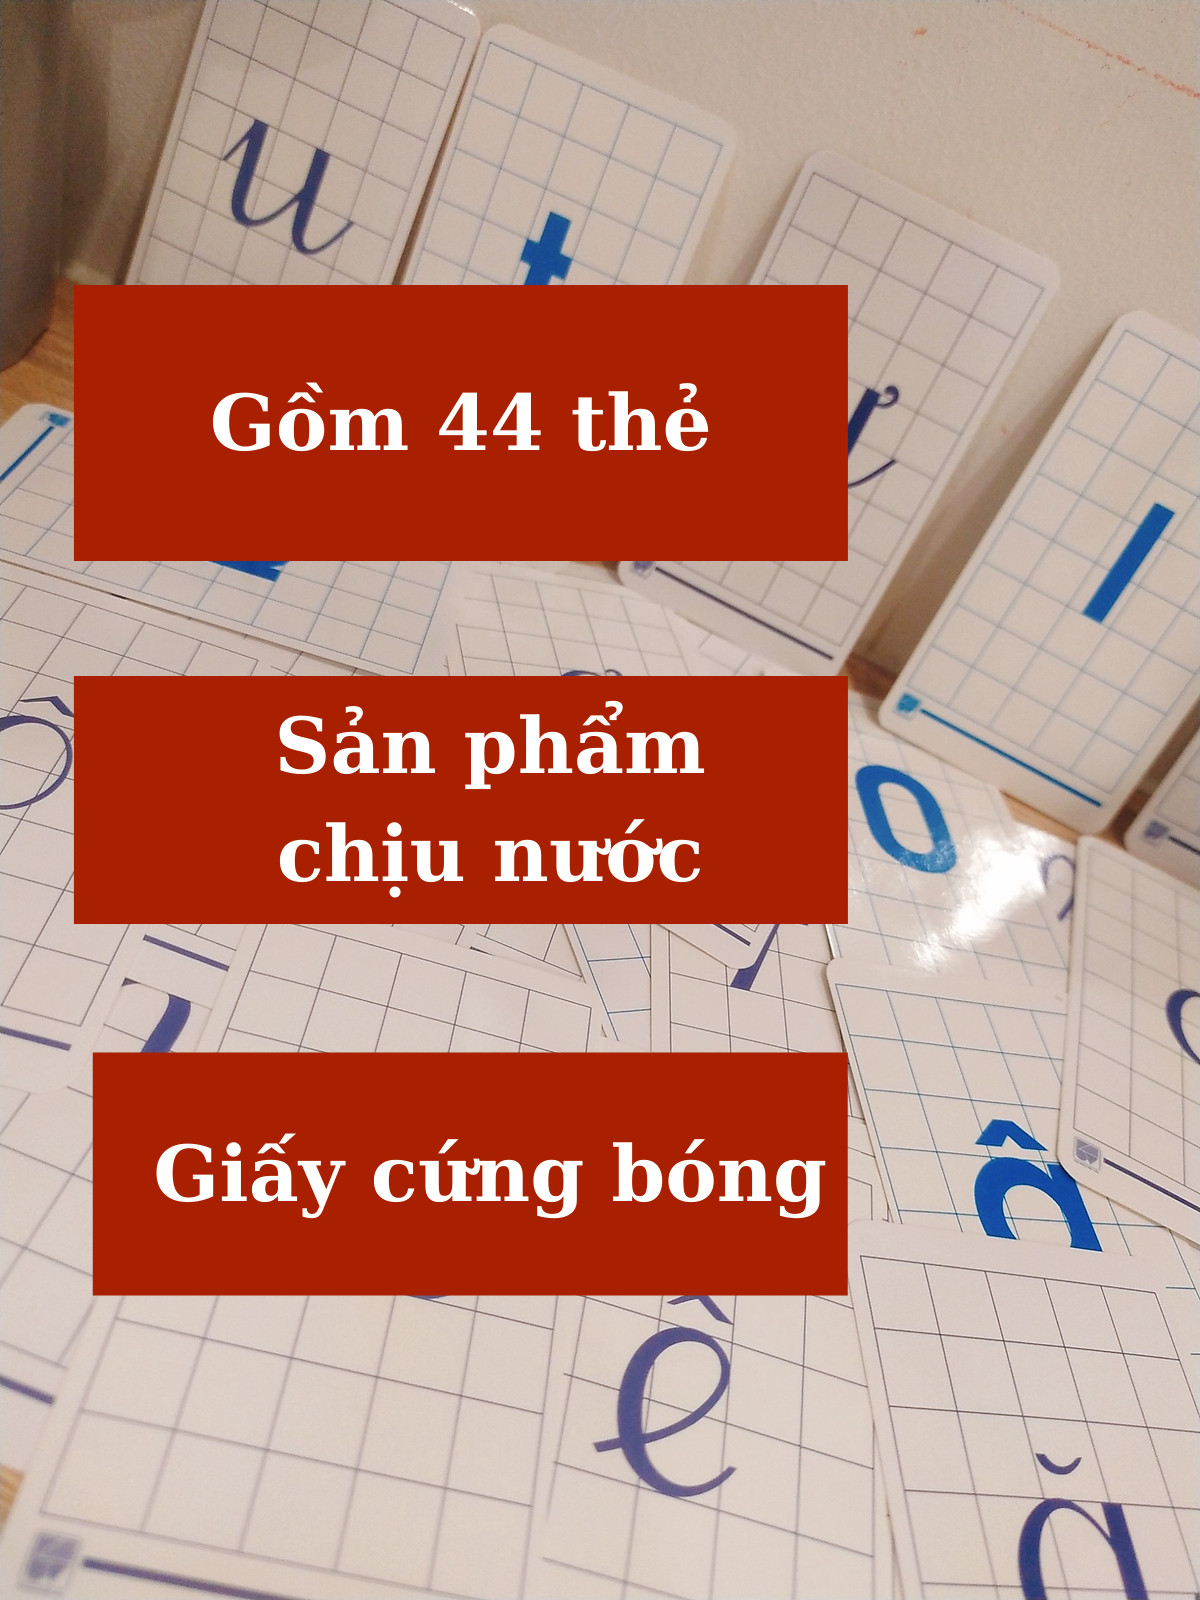 Flashcard bảng chữ cái tiếng Việt đầu tiên cho bé